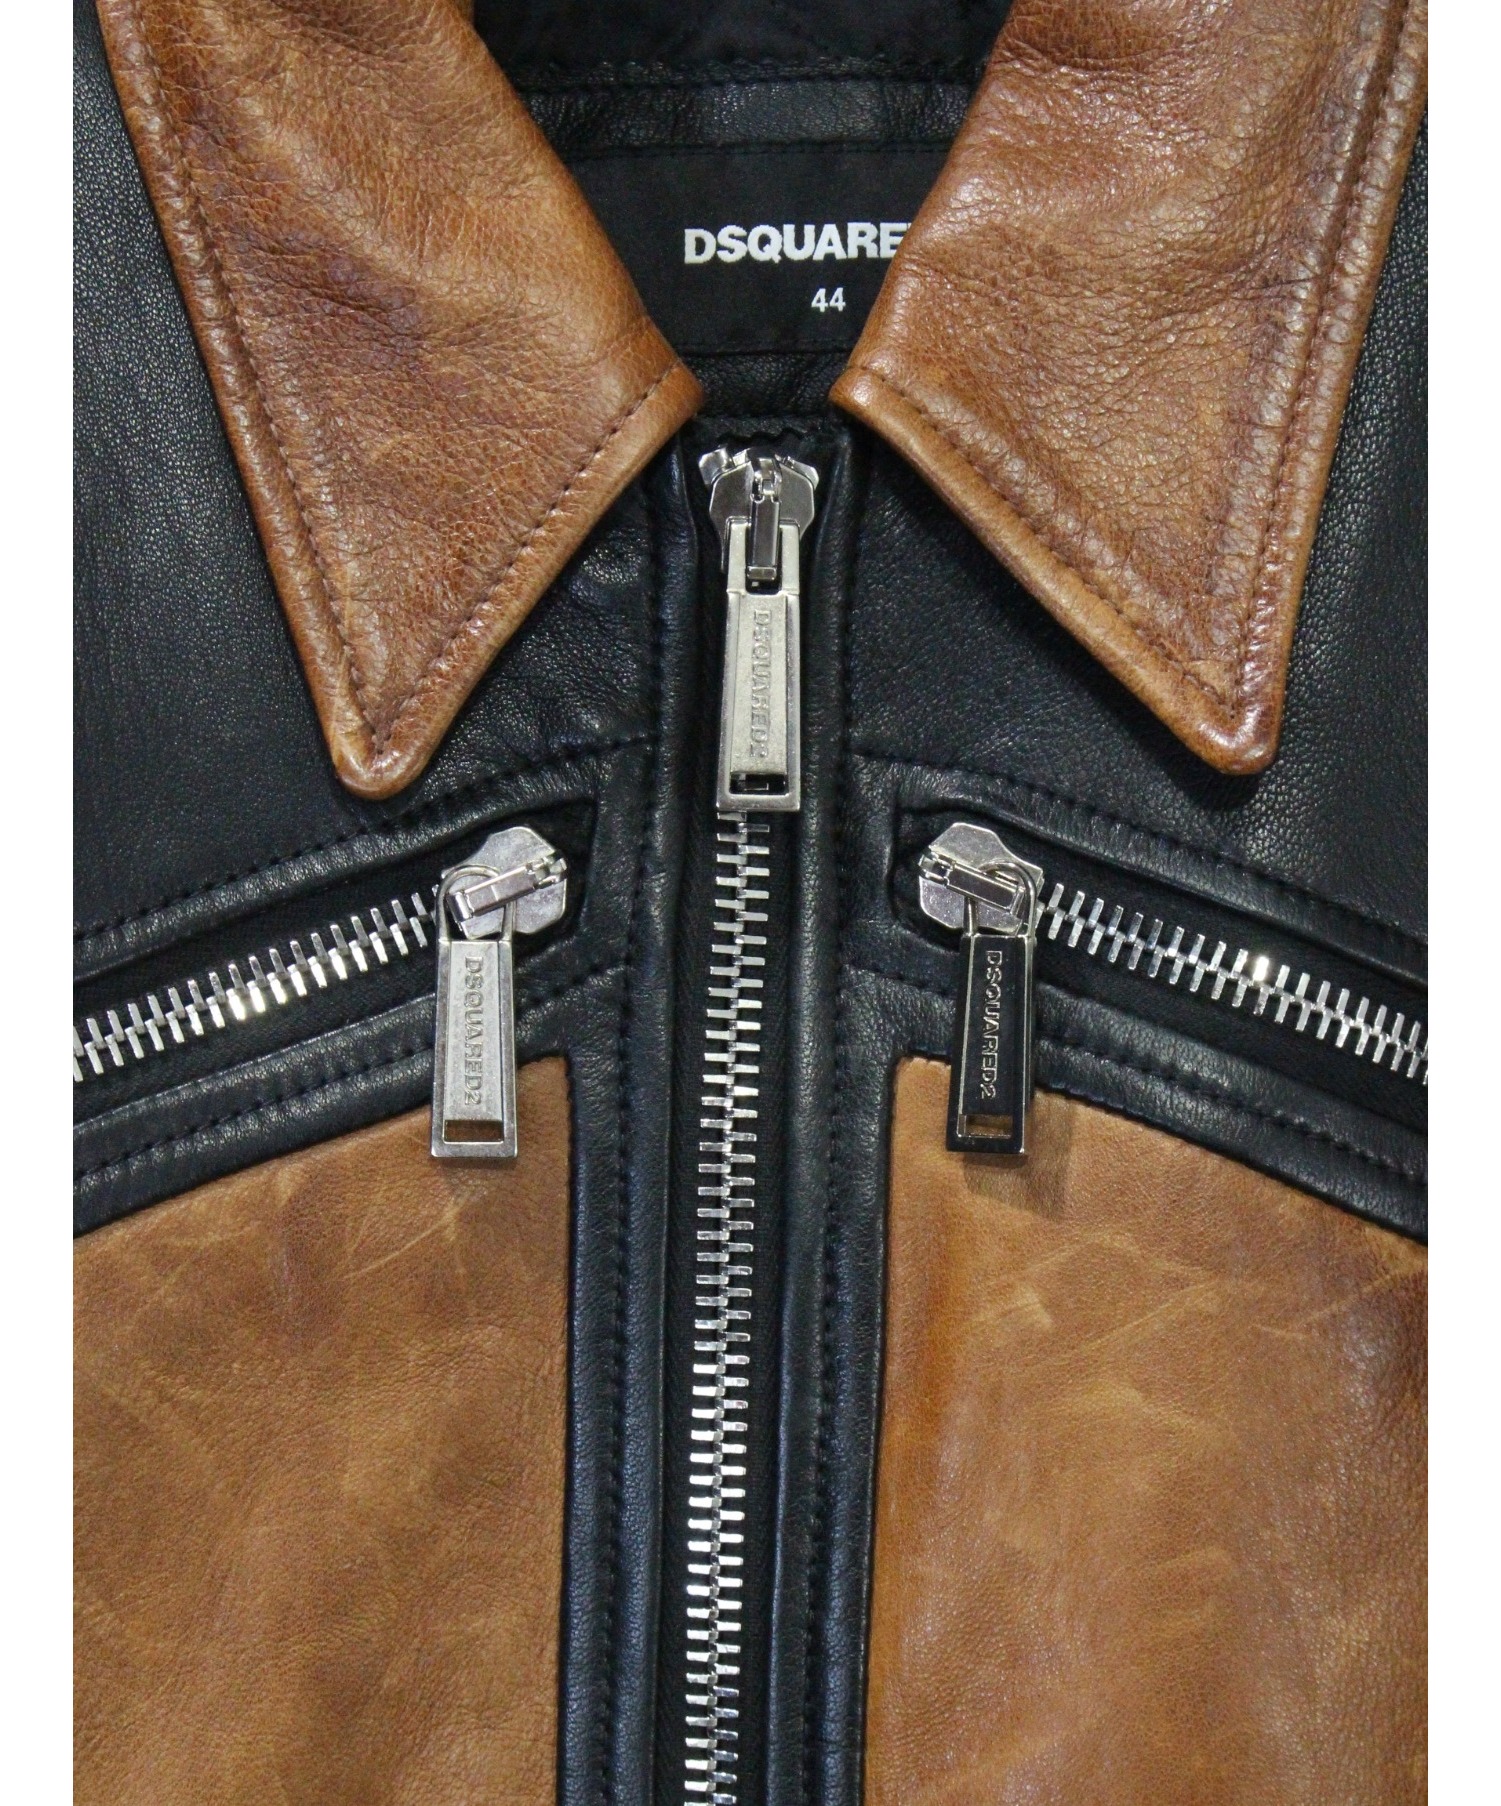 DSQUARED2 (ディースクエアード) レザージャケット サイズ:44